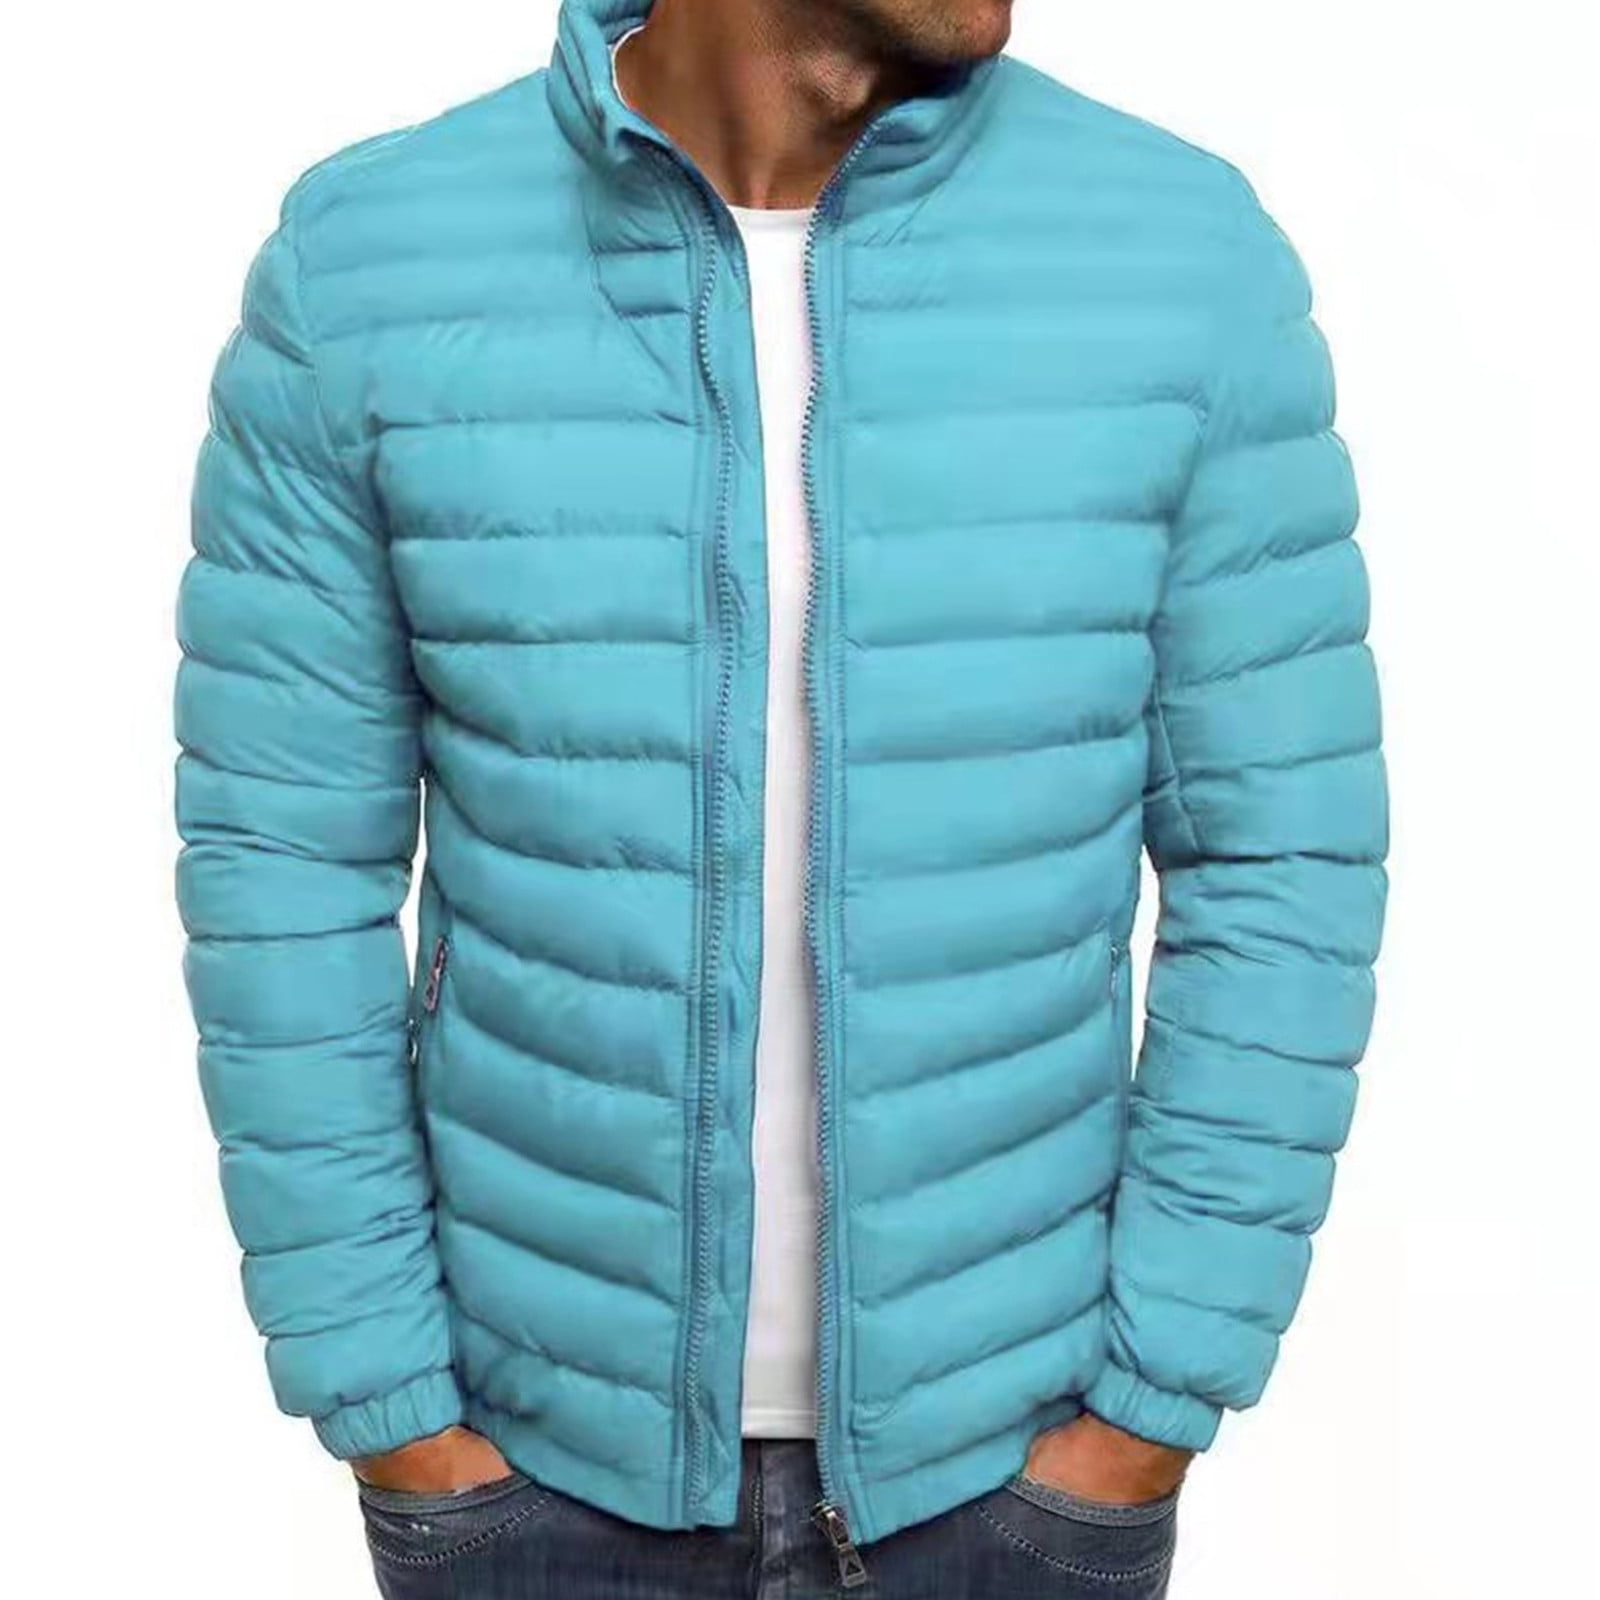 TMOYZQ Men's Lightweight Winter Packable Puffer Jacket Full Zip ...